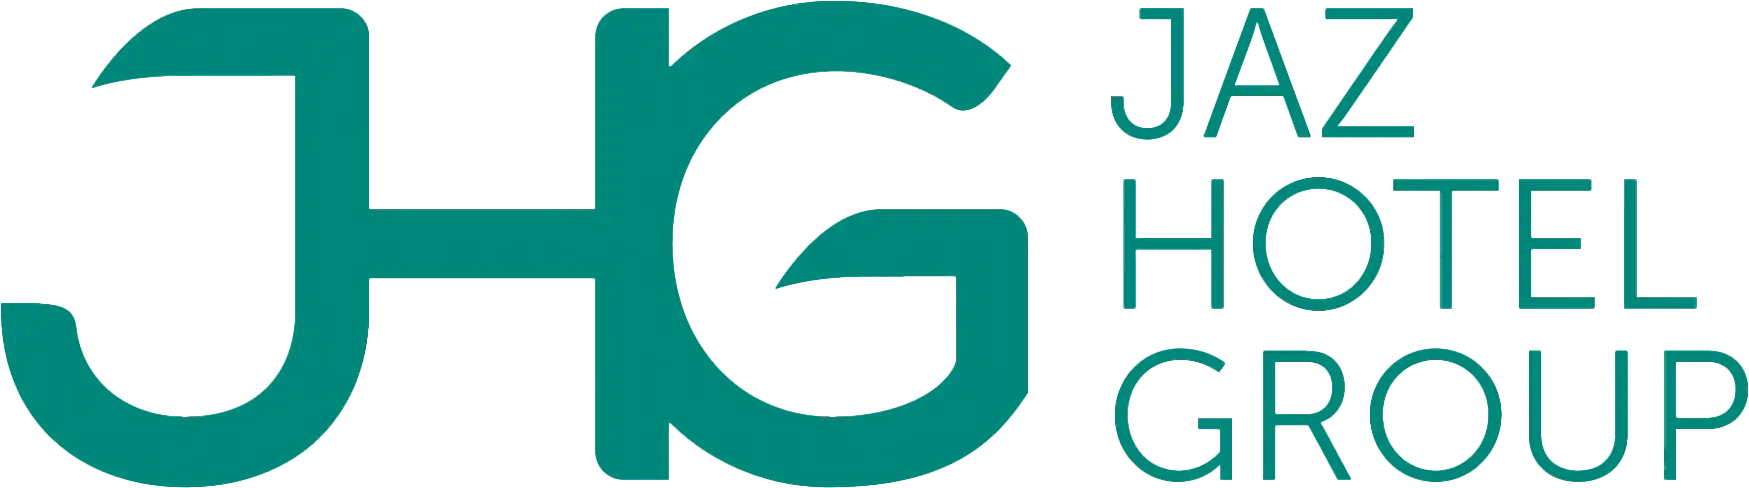 Jaz Hotels Group Logo